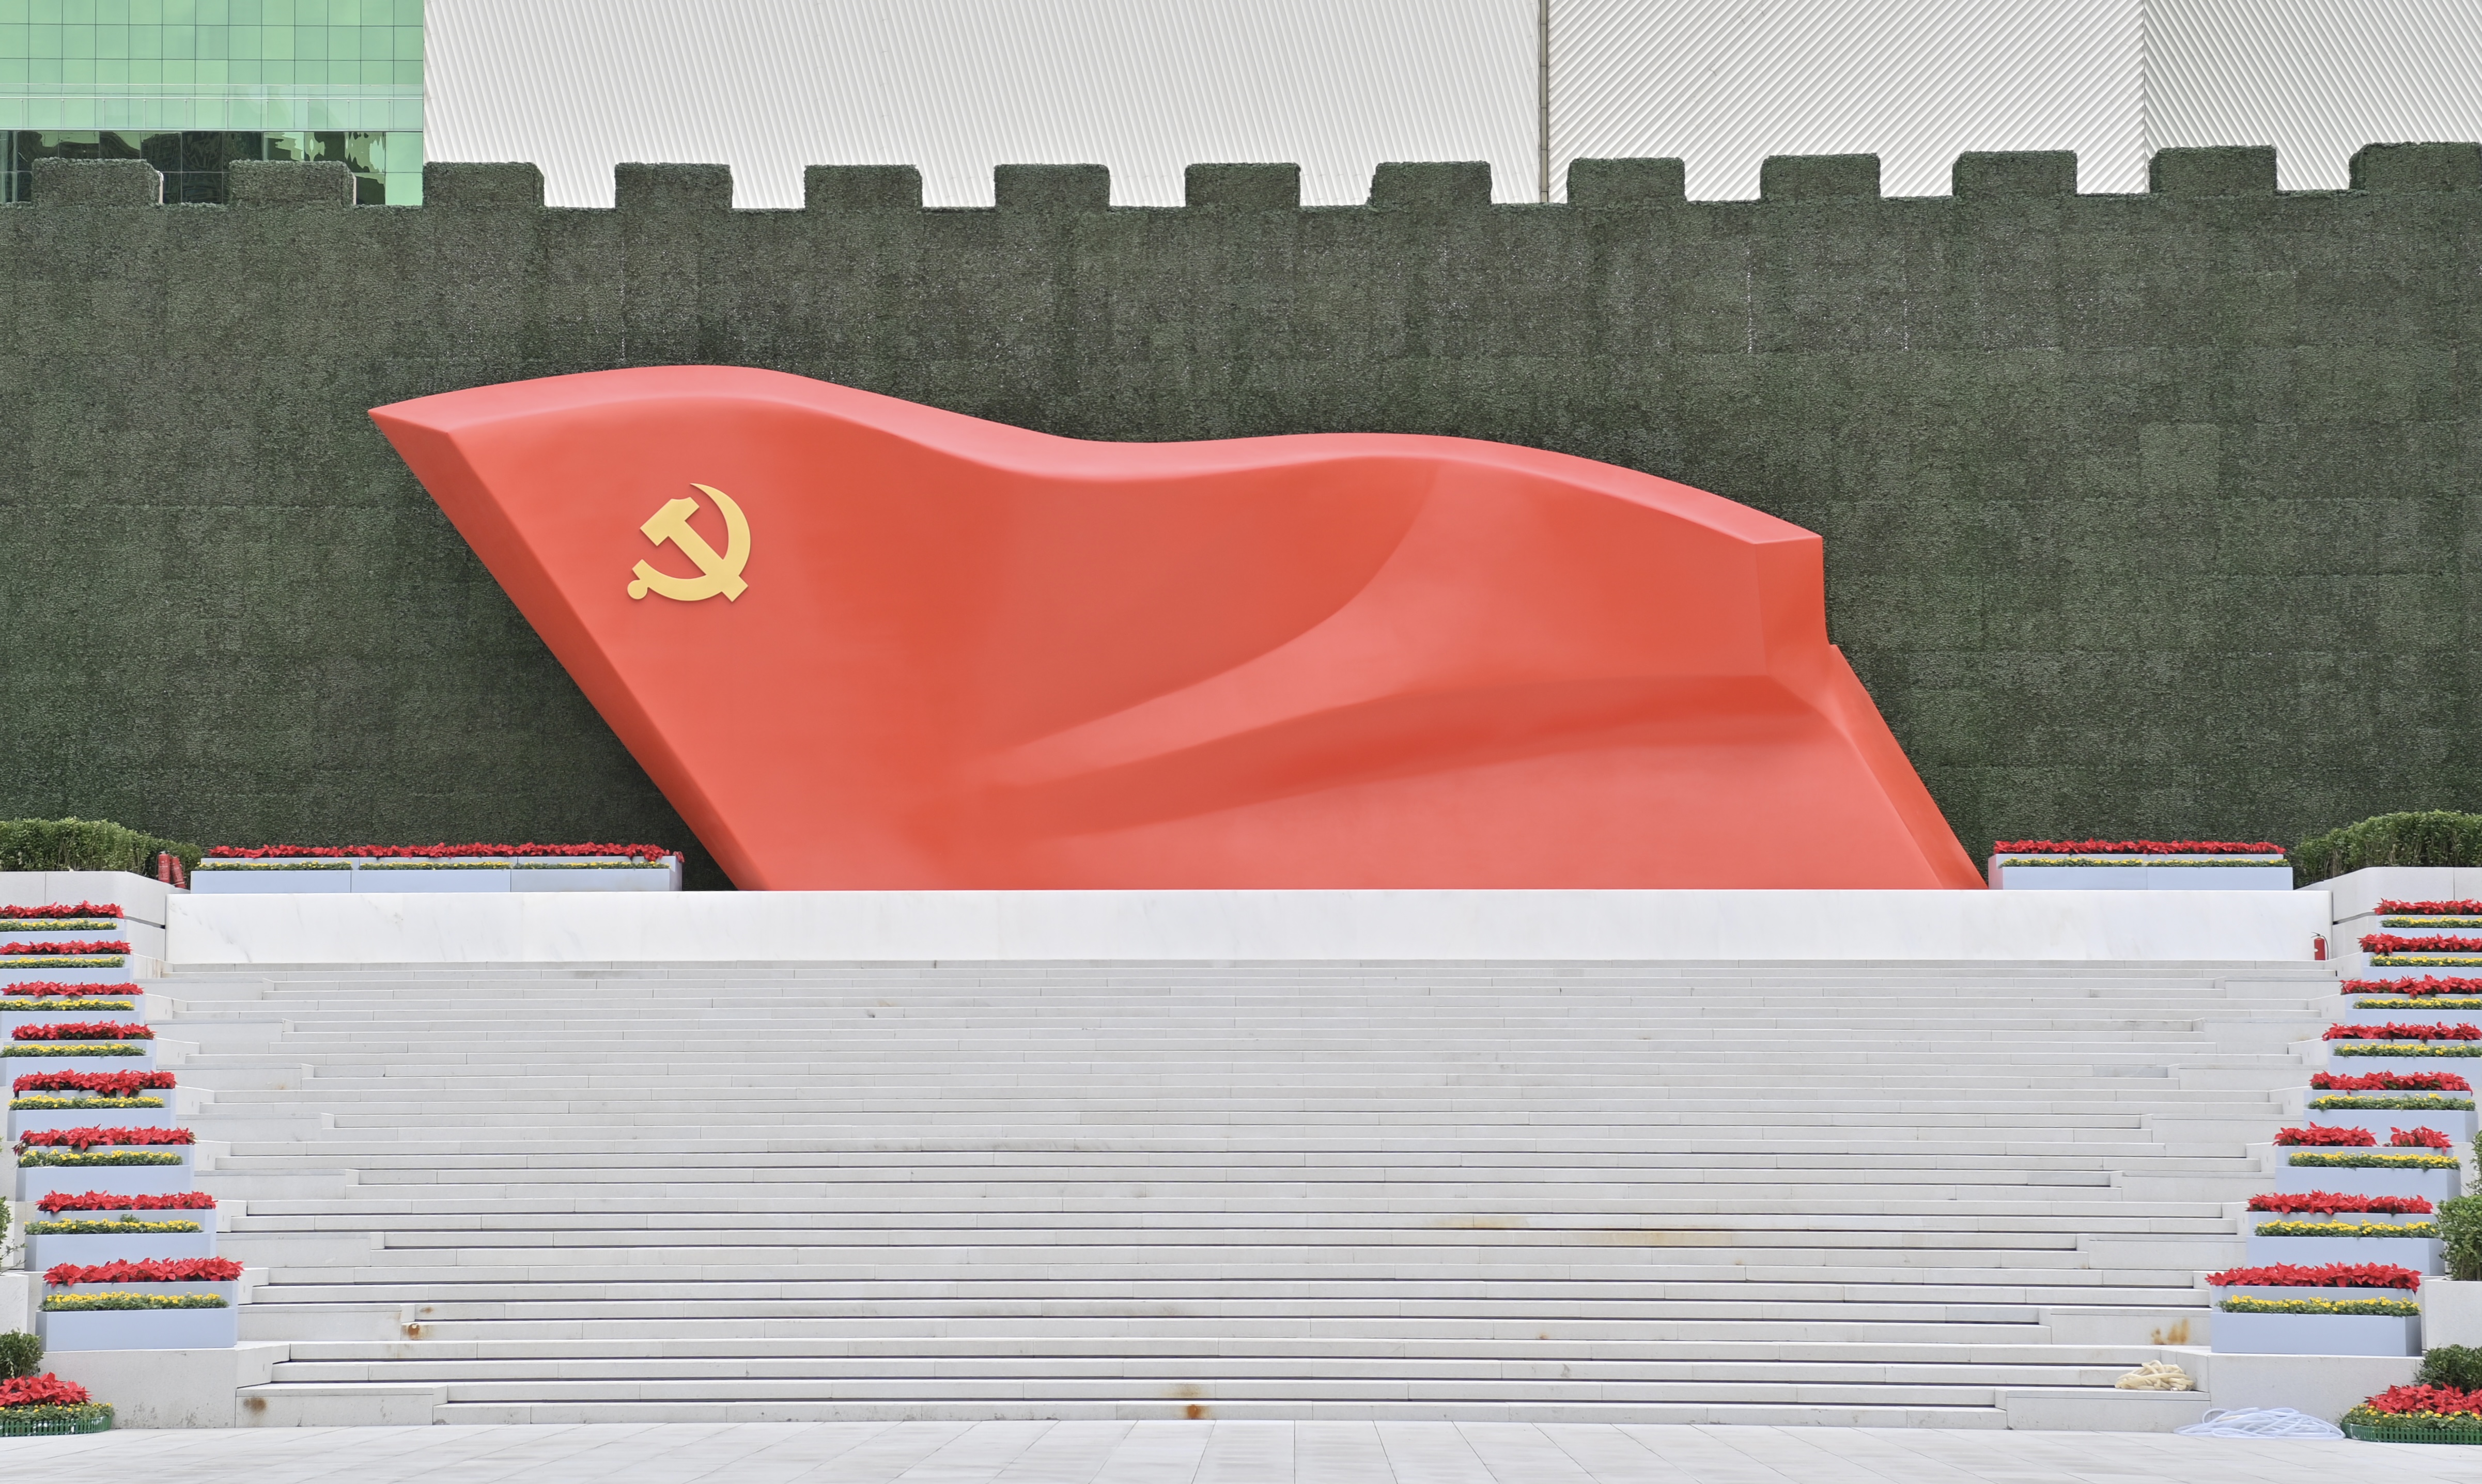 中国旗帜党旗图片